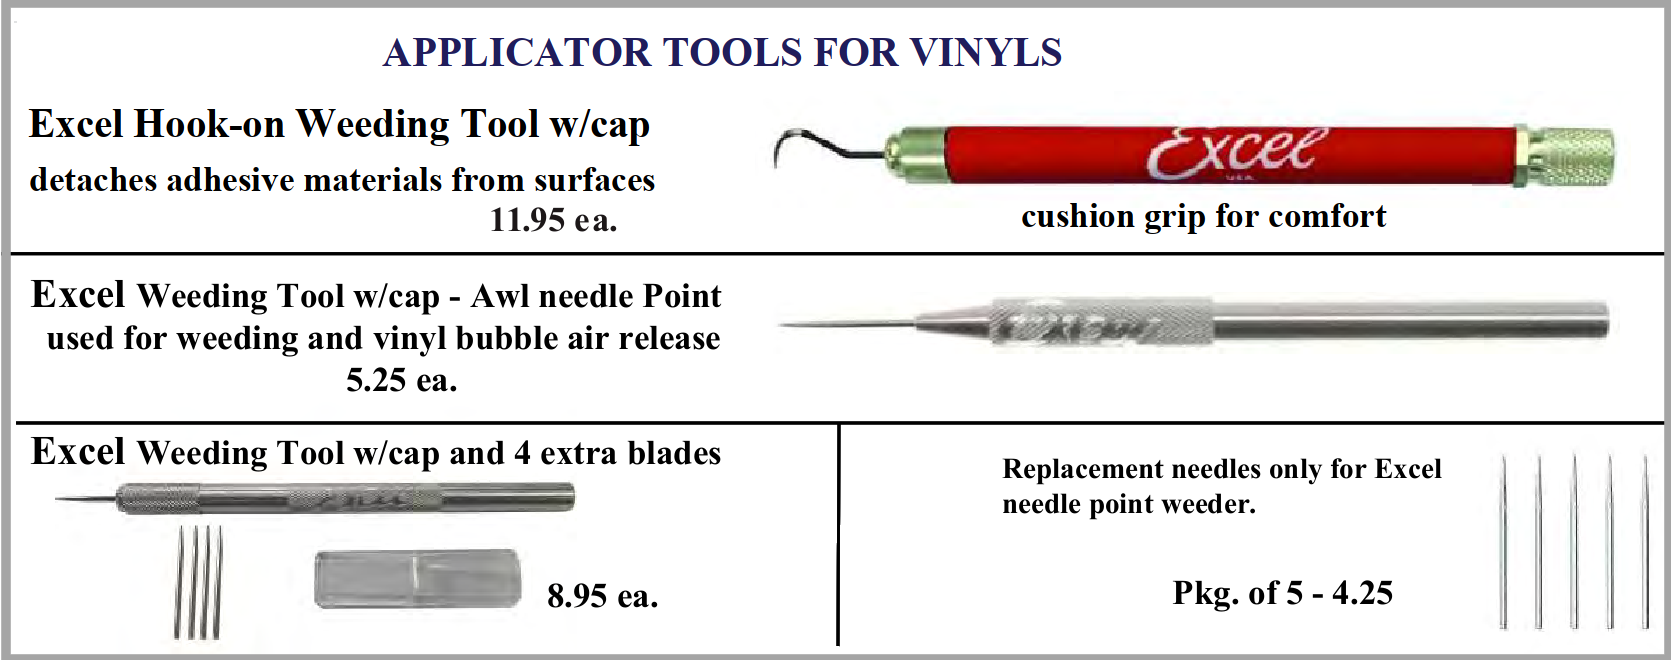 Application tools june 2022 - Vinyl Application Tools